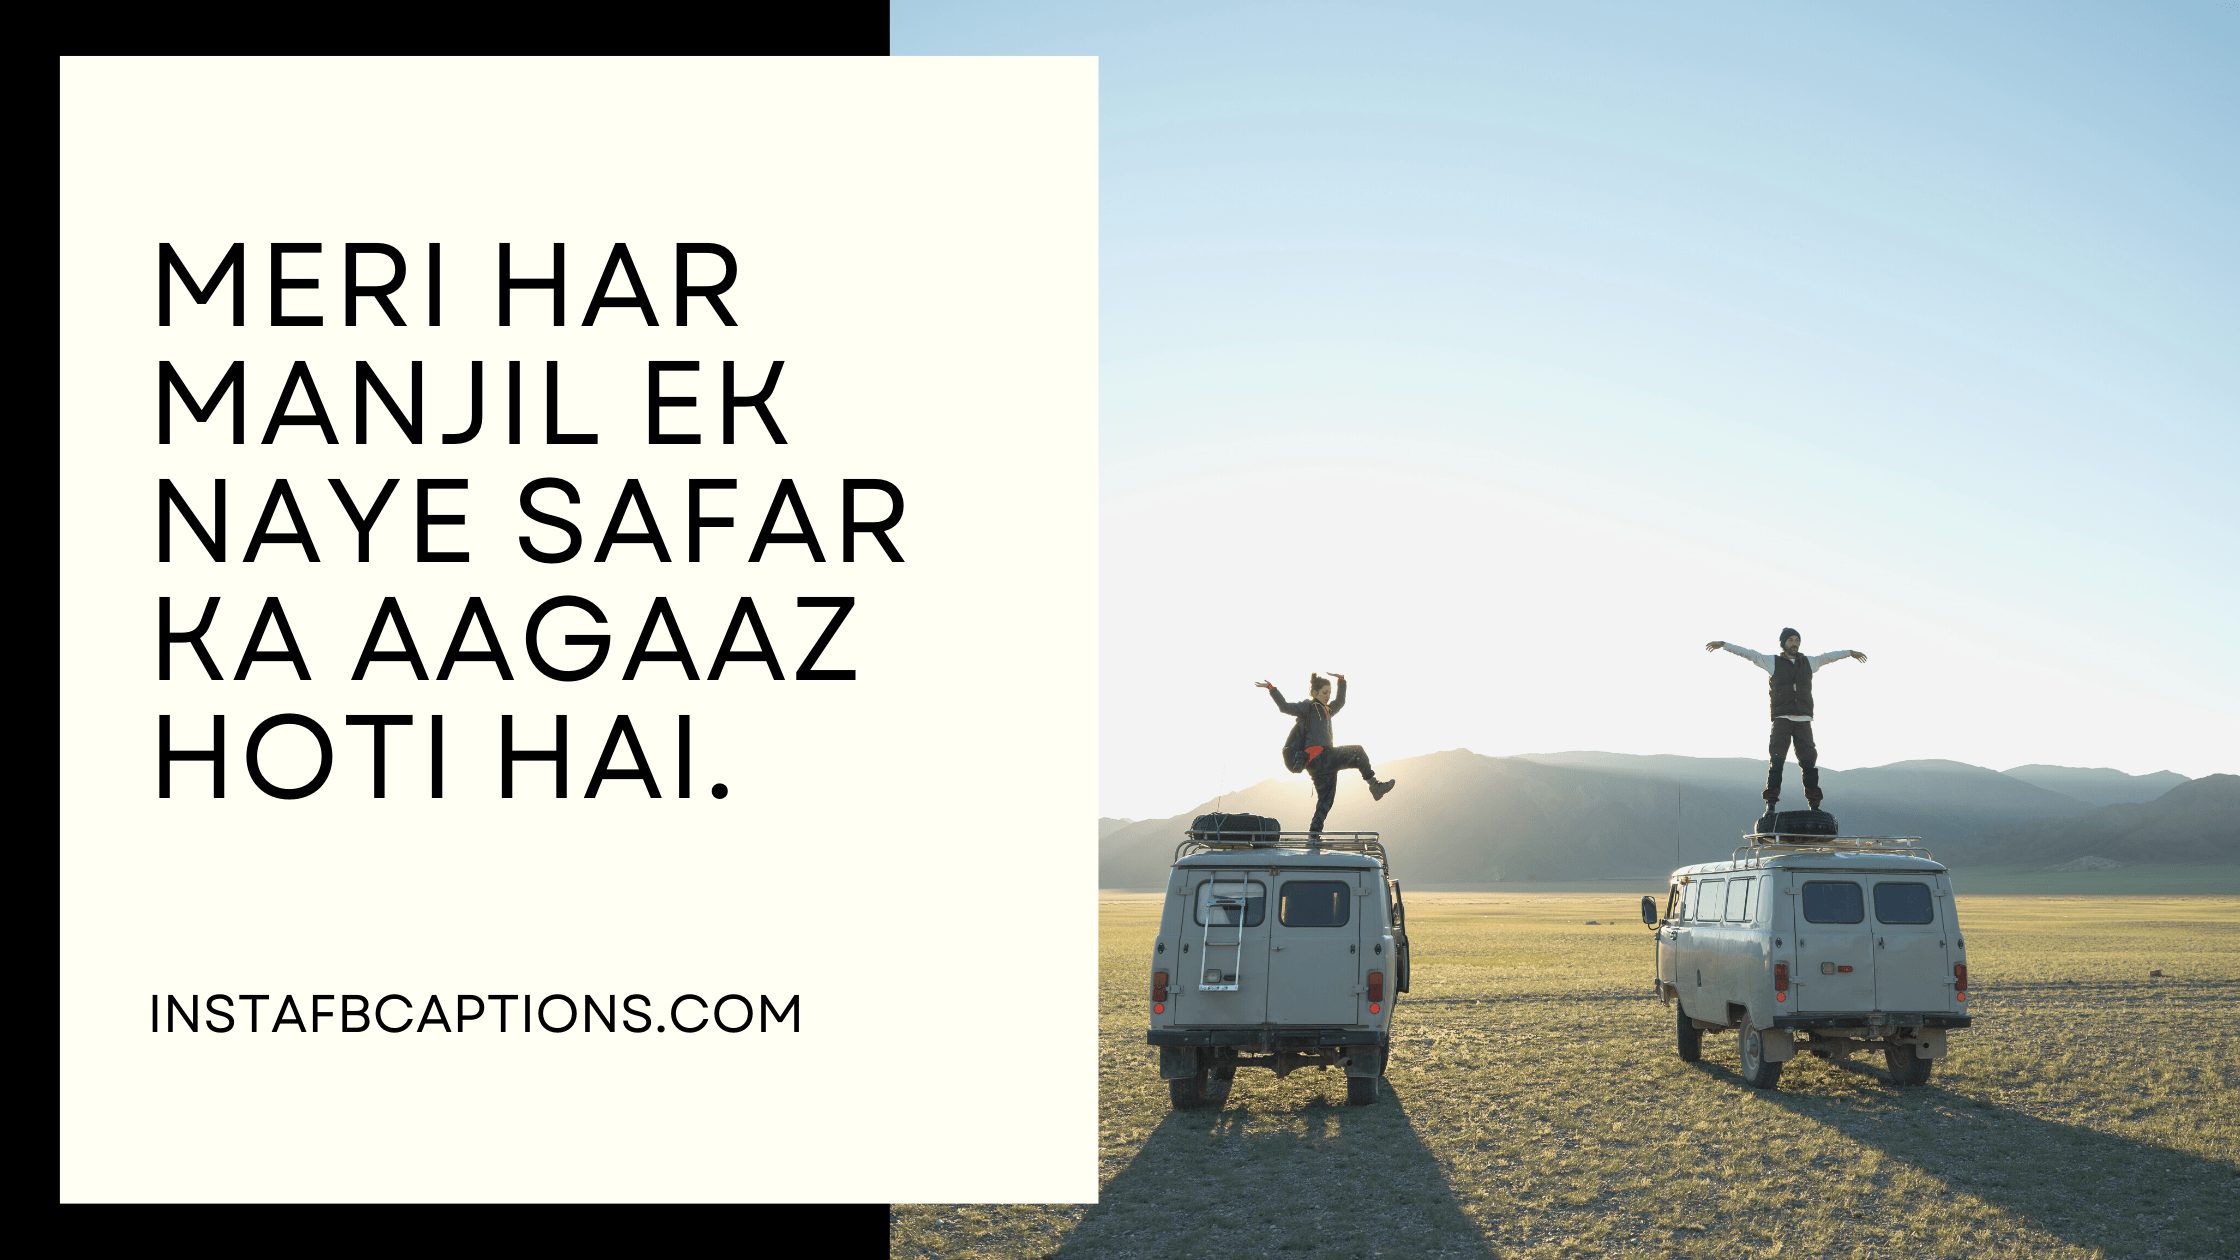 Meri Har manjil ek naye safar ka aagaaz hoti hai travel captions for instagram - Hindi Travel Captions - 130+ Best Traveling Captions For Instagram